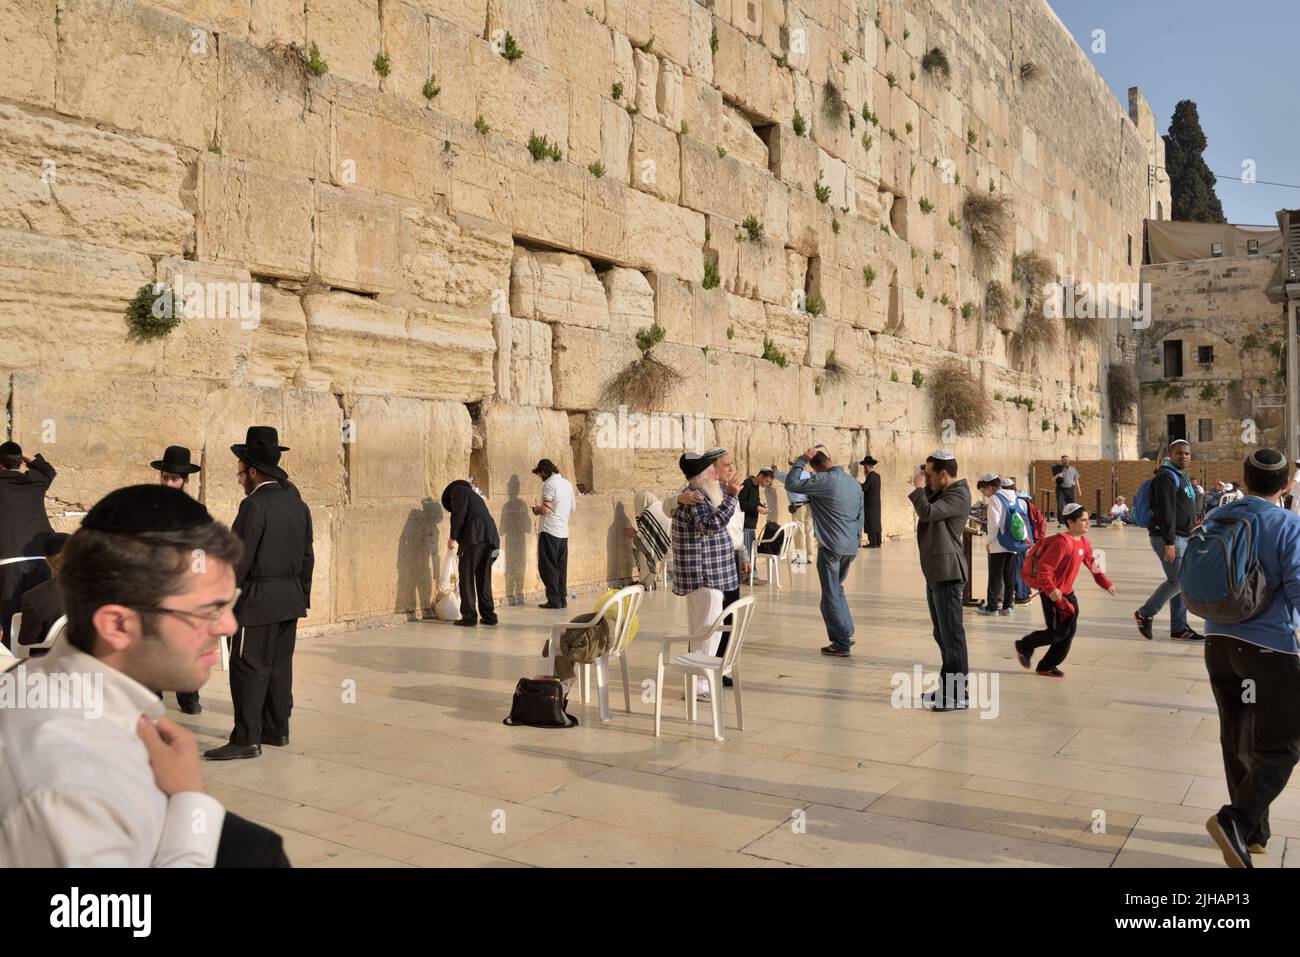 Jérusalem, Israël - 20 mars 2014 : Les Juifs prier sous le mur occidental dans la vieille ville. La vieille ville est classée au Patrimoine de l'UNESCO depuis 1981 Banque D'Images